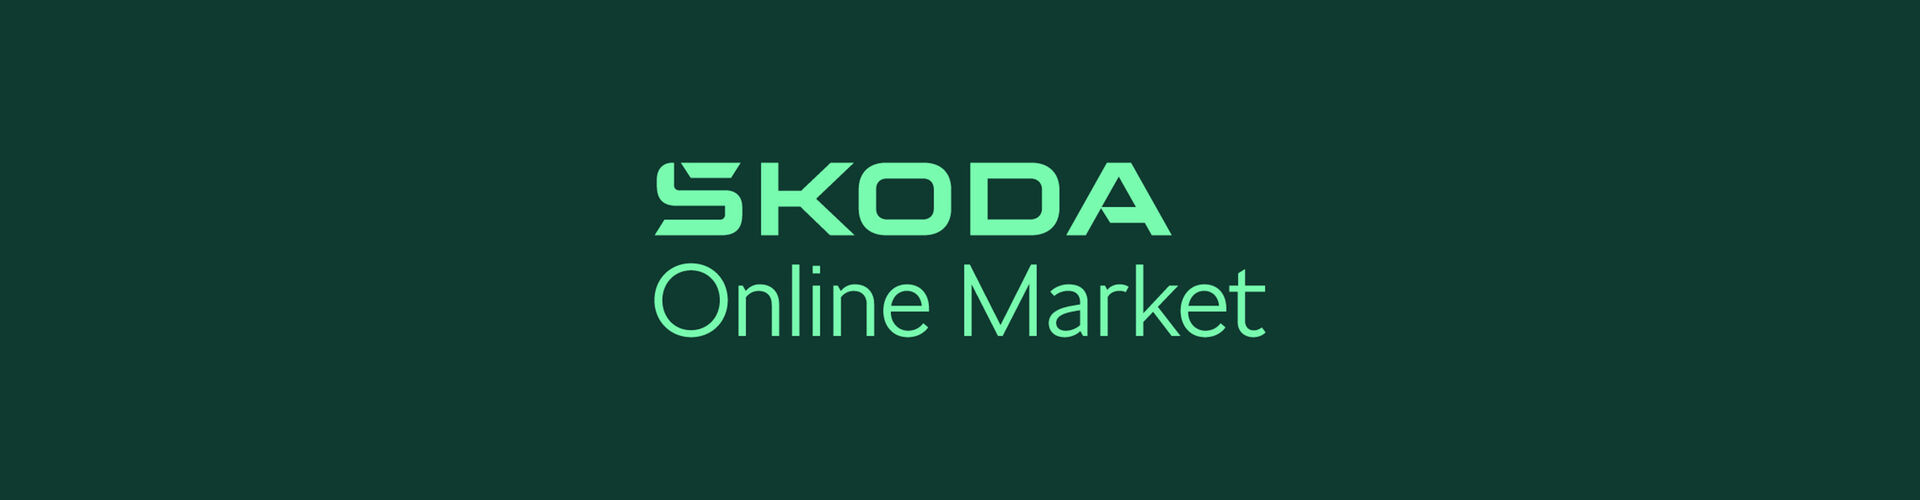 Skoda Online Market